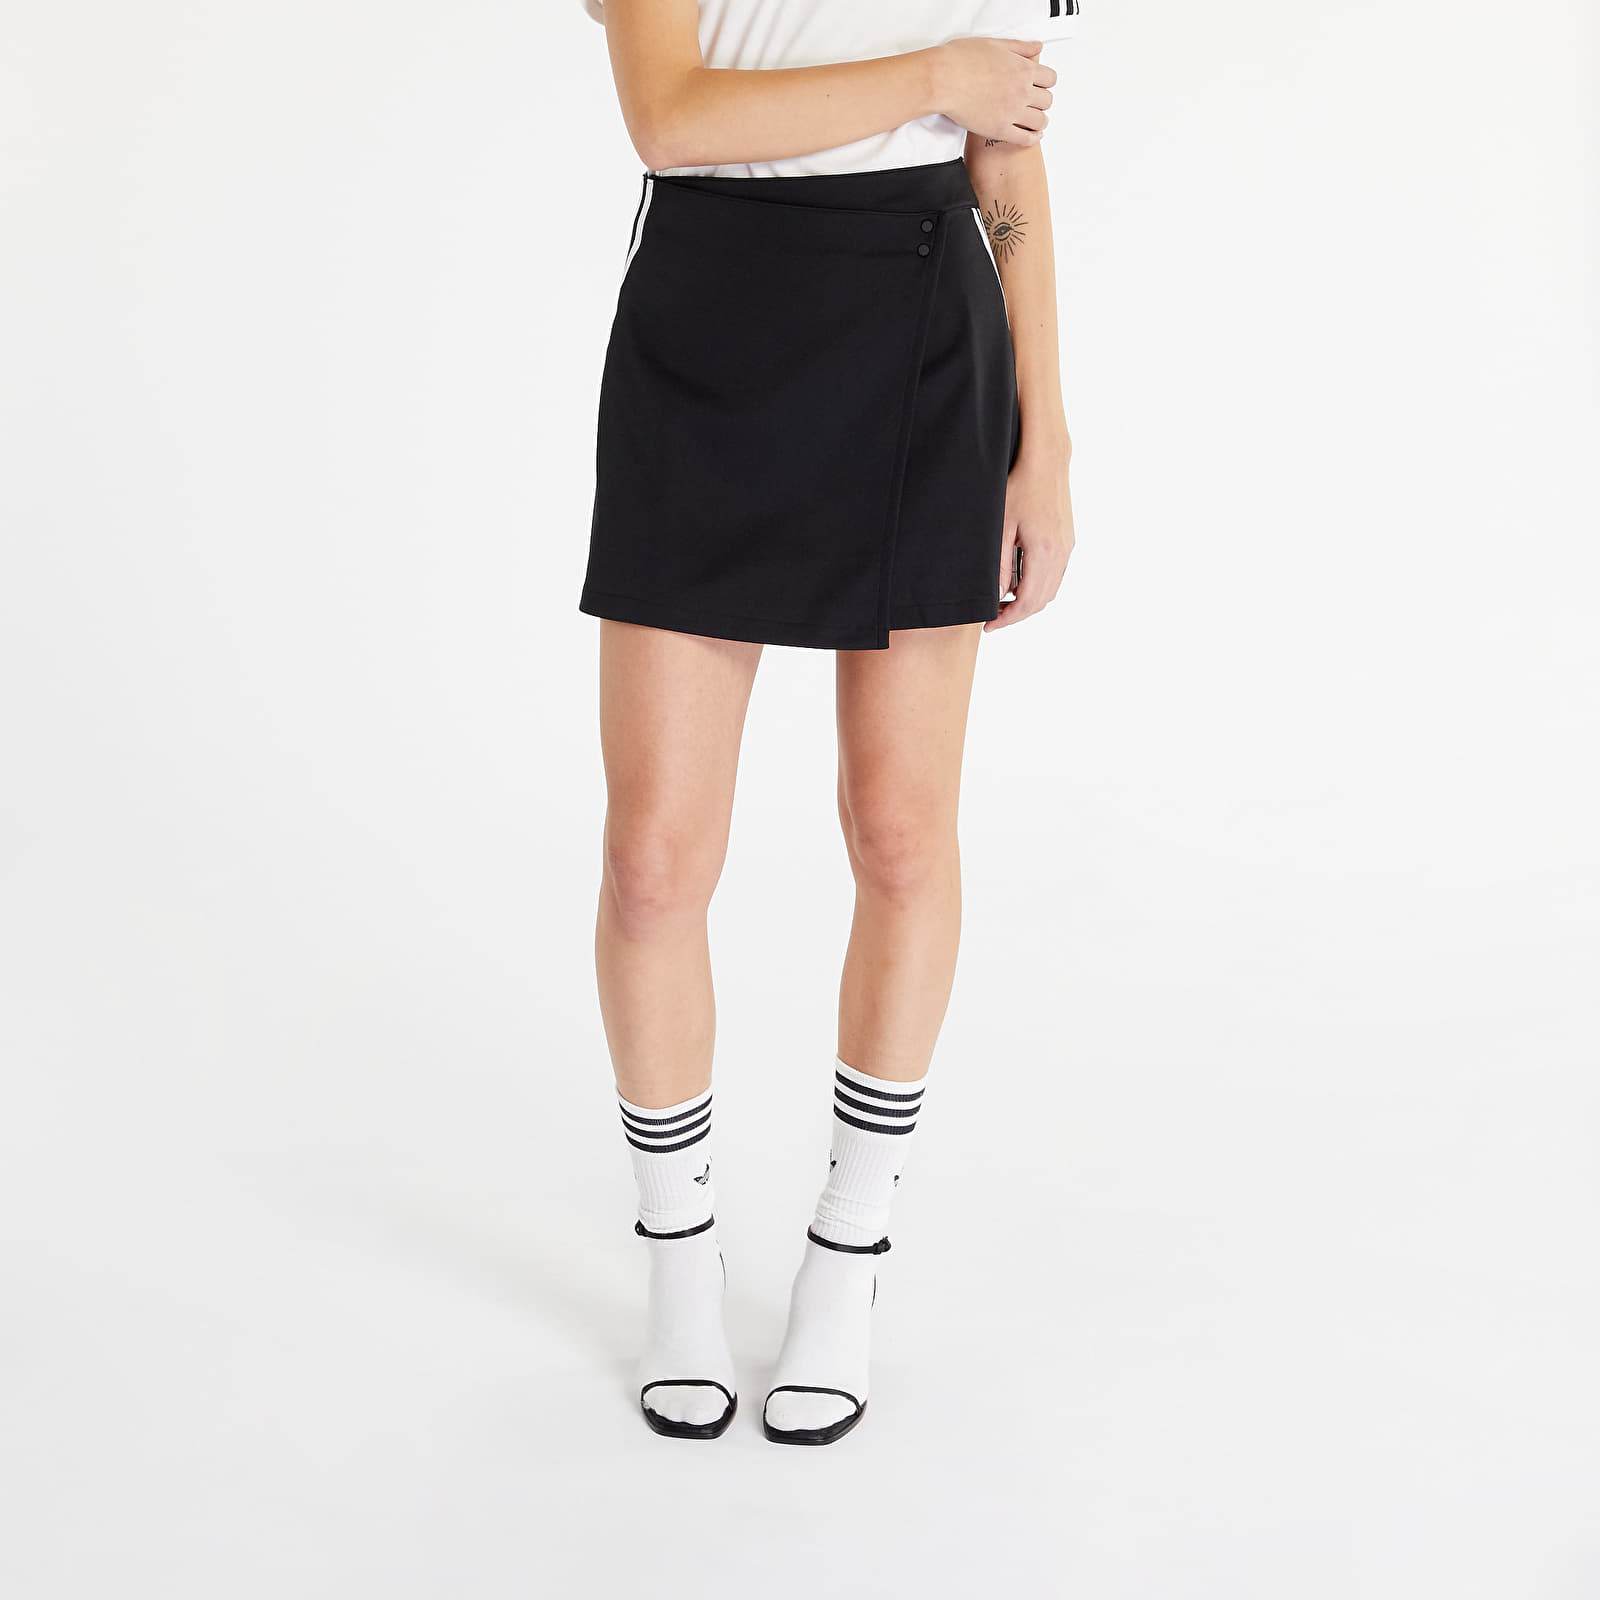 Krila Adidas Originals Wrapping Skirt Black Noir